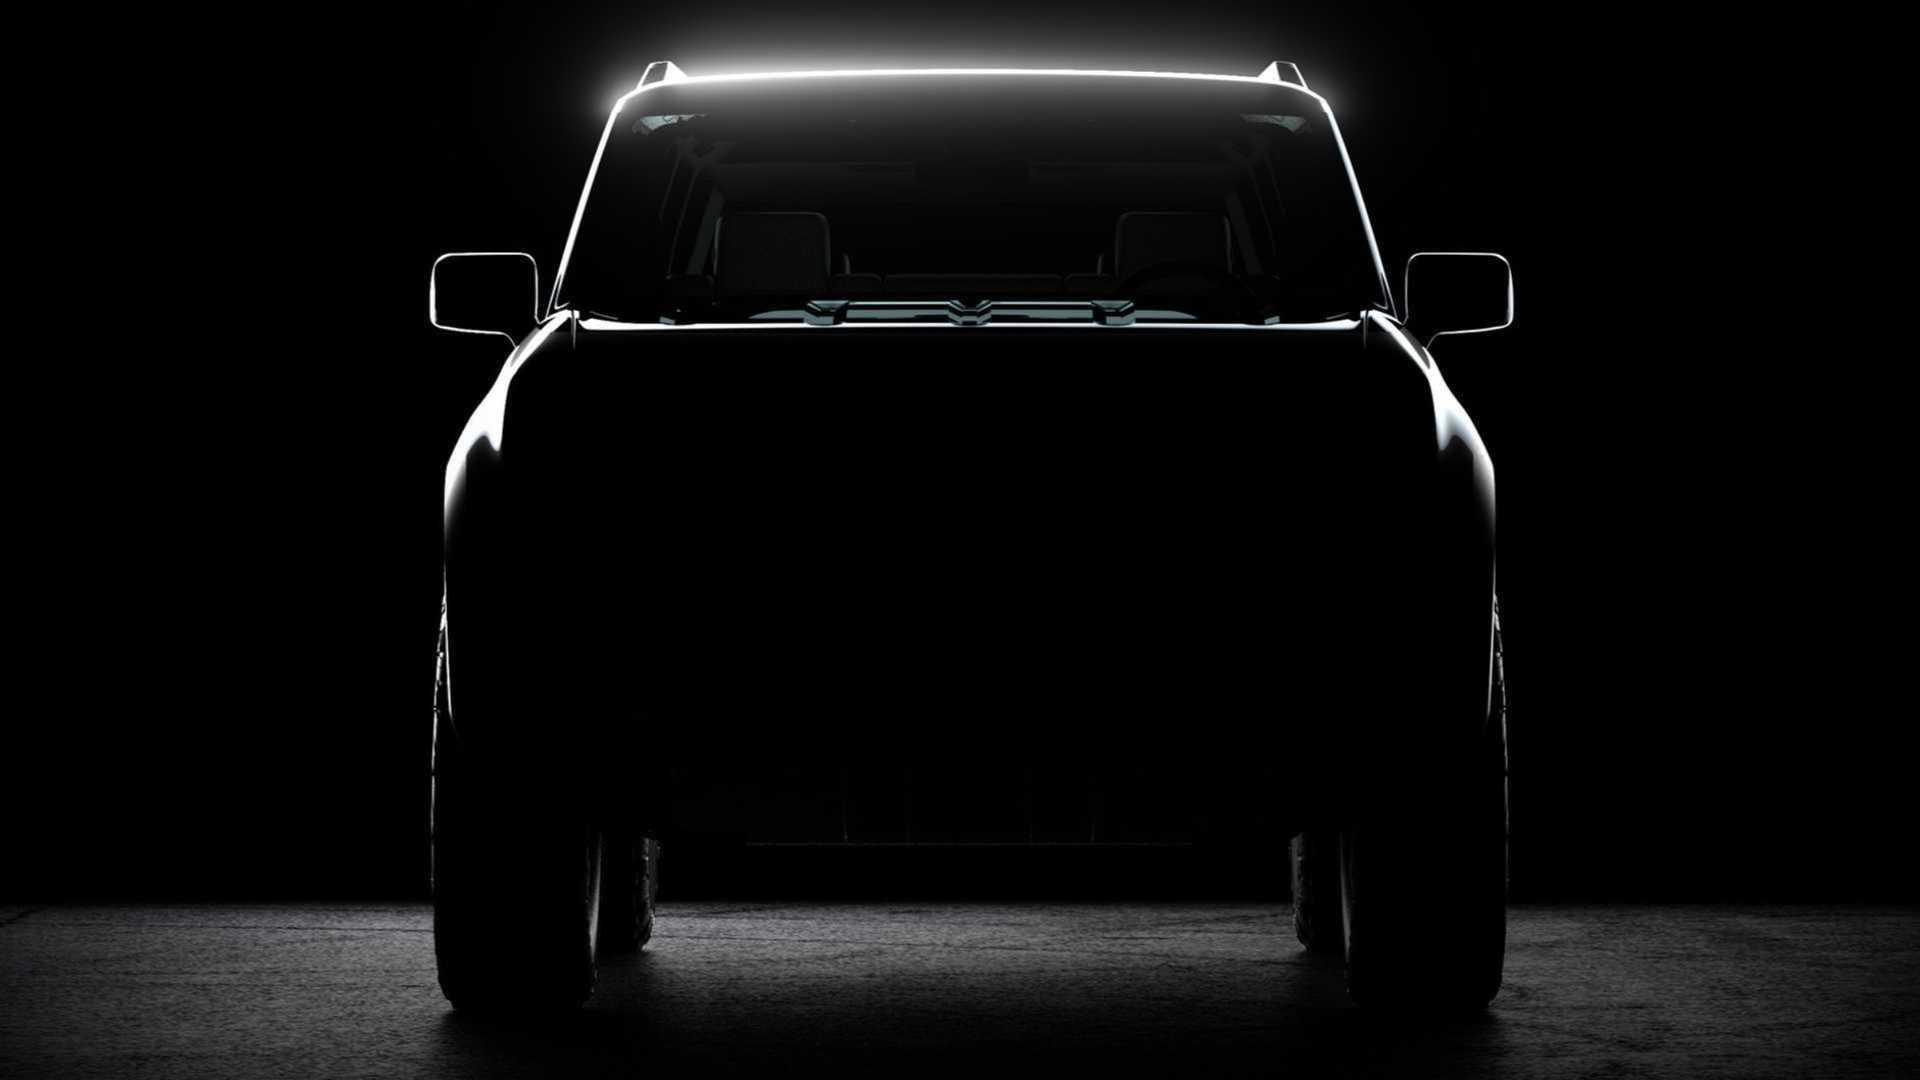 فولكس واجن تطور SUV جديدة كلياً منافسة لفورد برونكو وجيب رانجلر 2